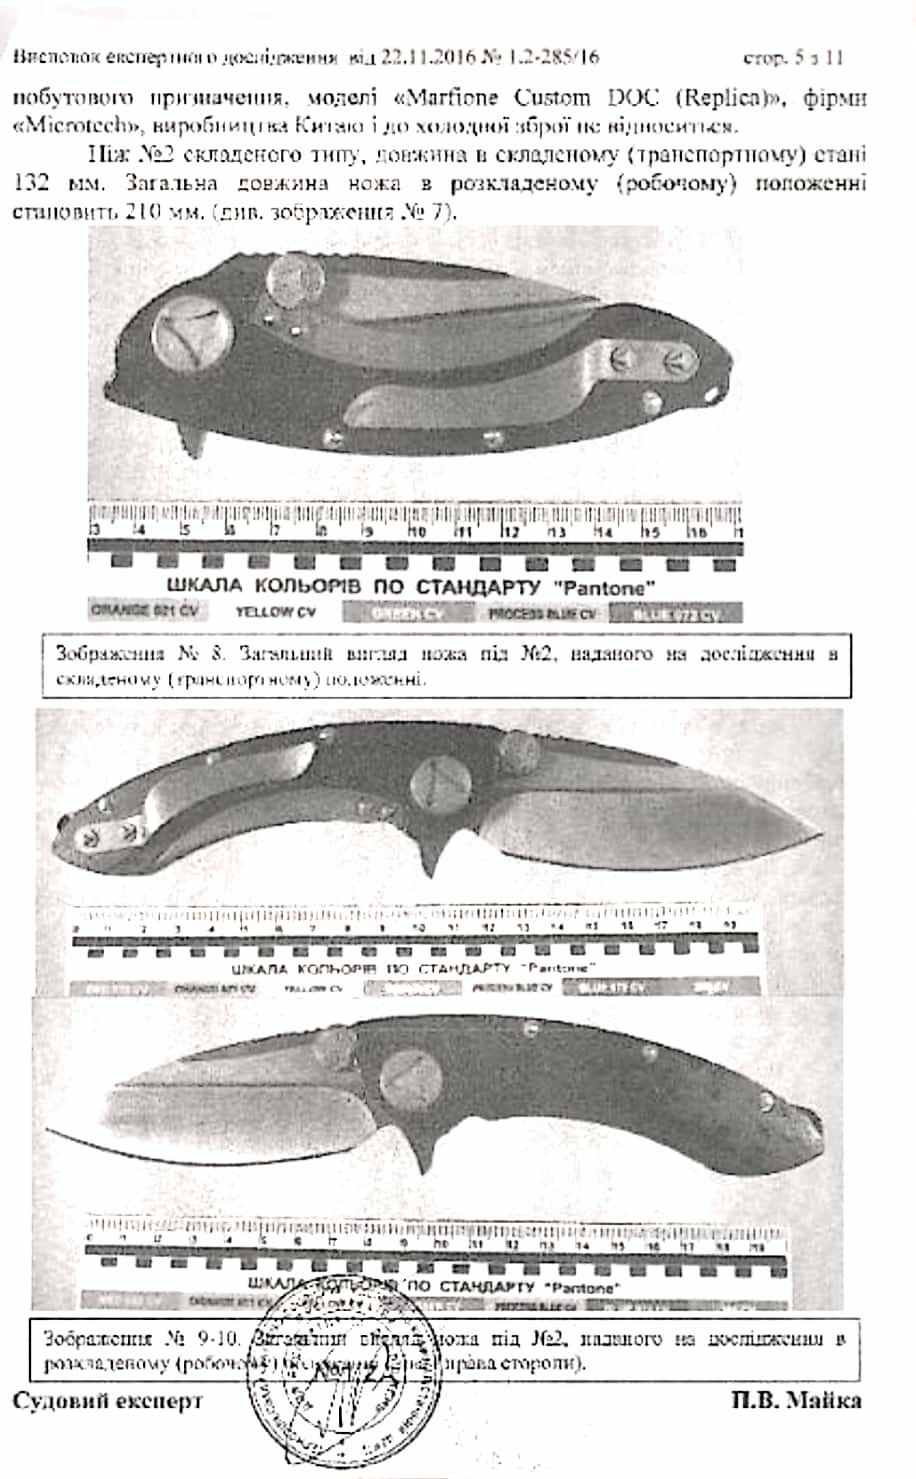 Нож Microtech Whaleshark (Акула)